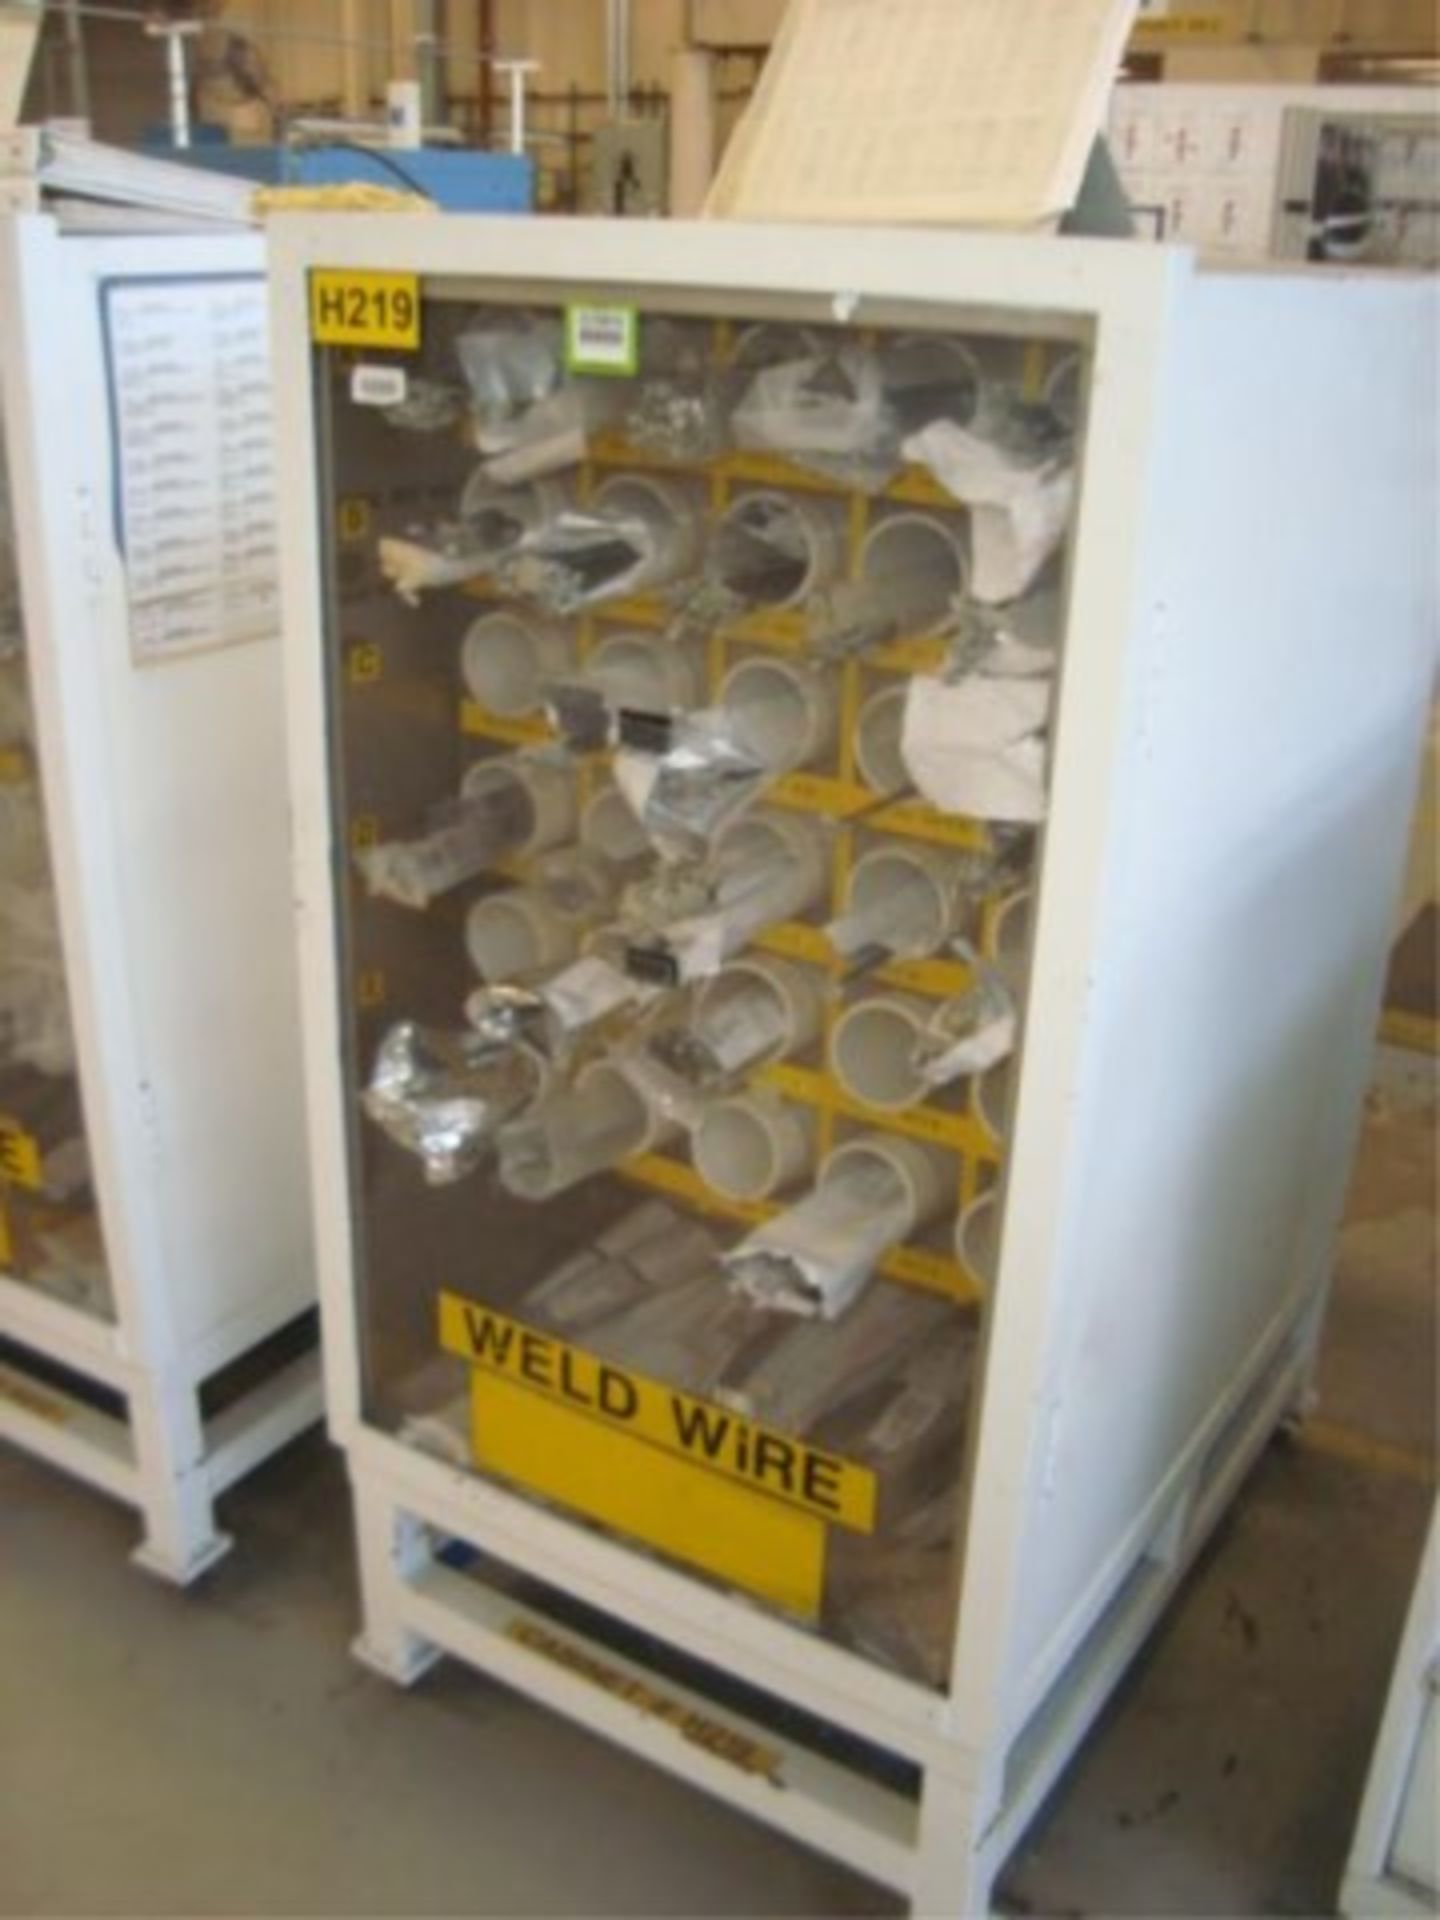 Heavy Duty Weld Wire Supply Cabinet W/Welding - Image 2 of 3